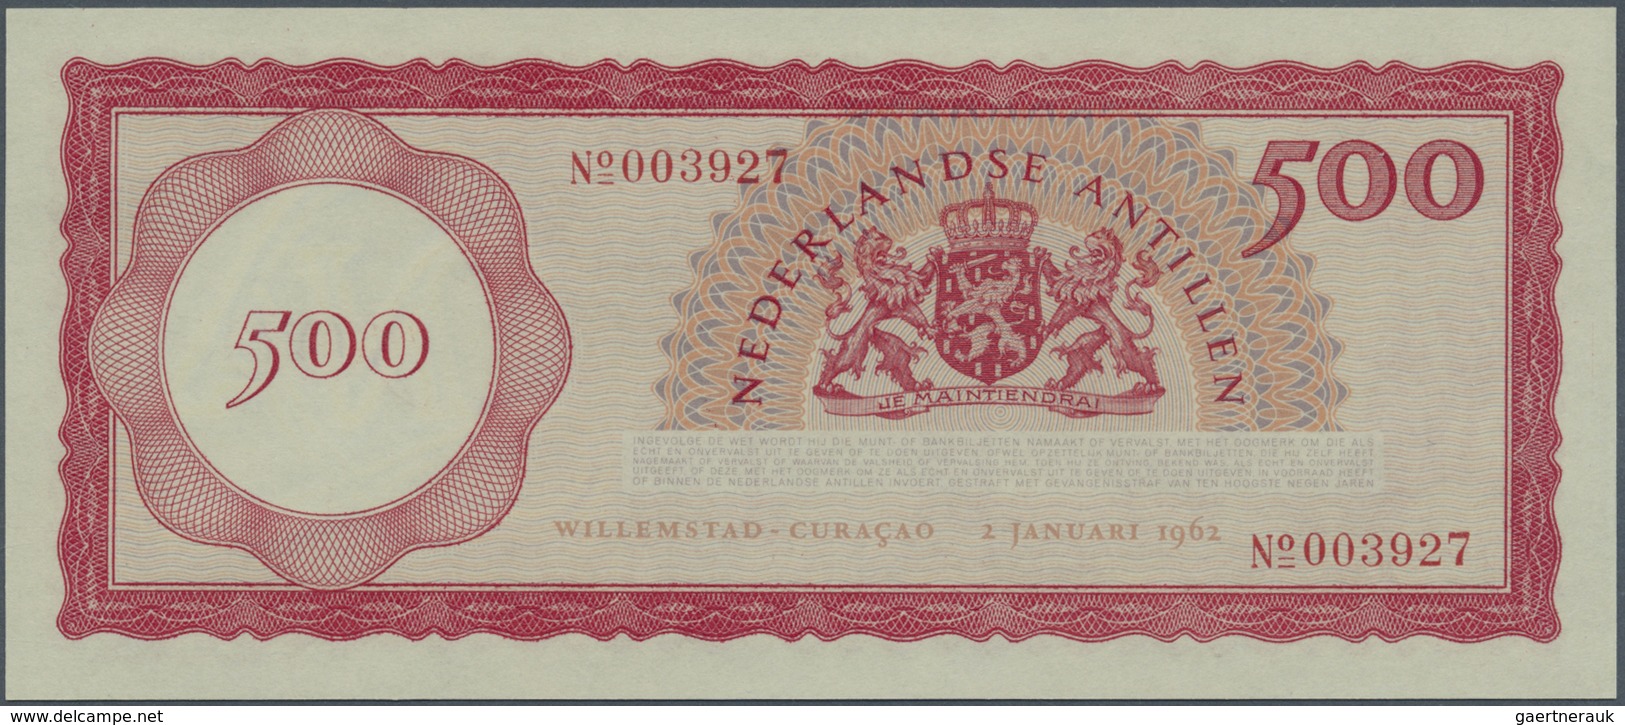 Netherlands Antilles / Niederländische Antillen: 500 Gulden 1962, P.7a In Perfect Condition, PMG Gra - Netherlands Antilles (...-1986)